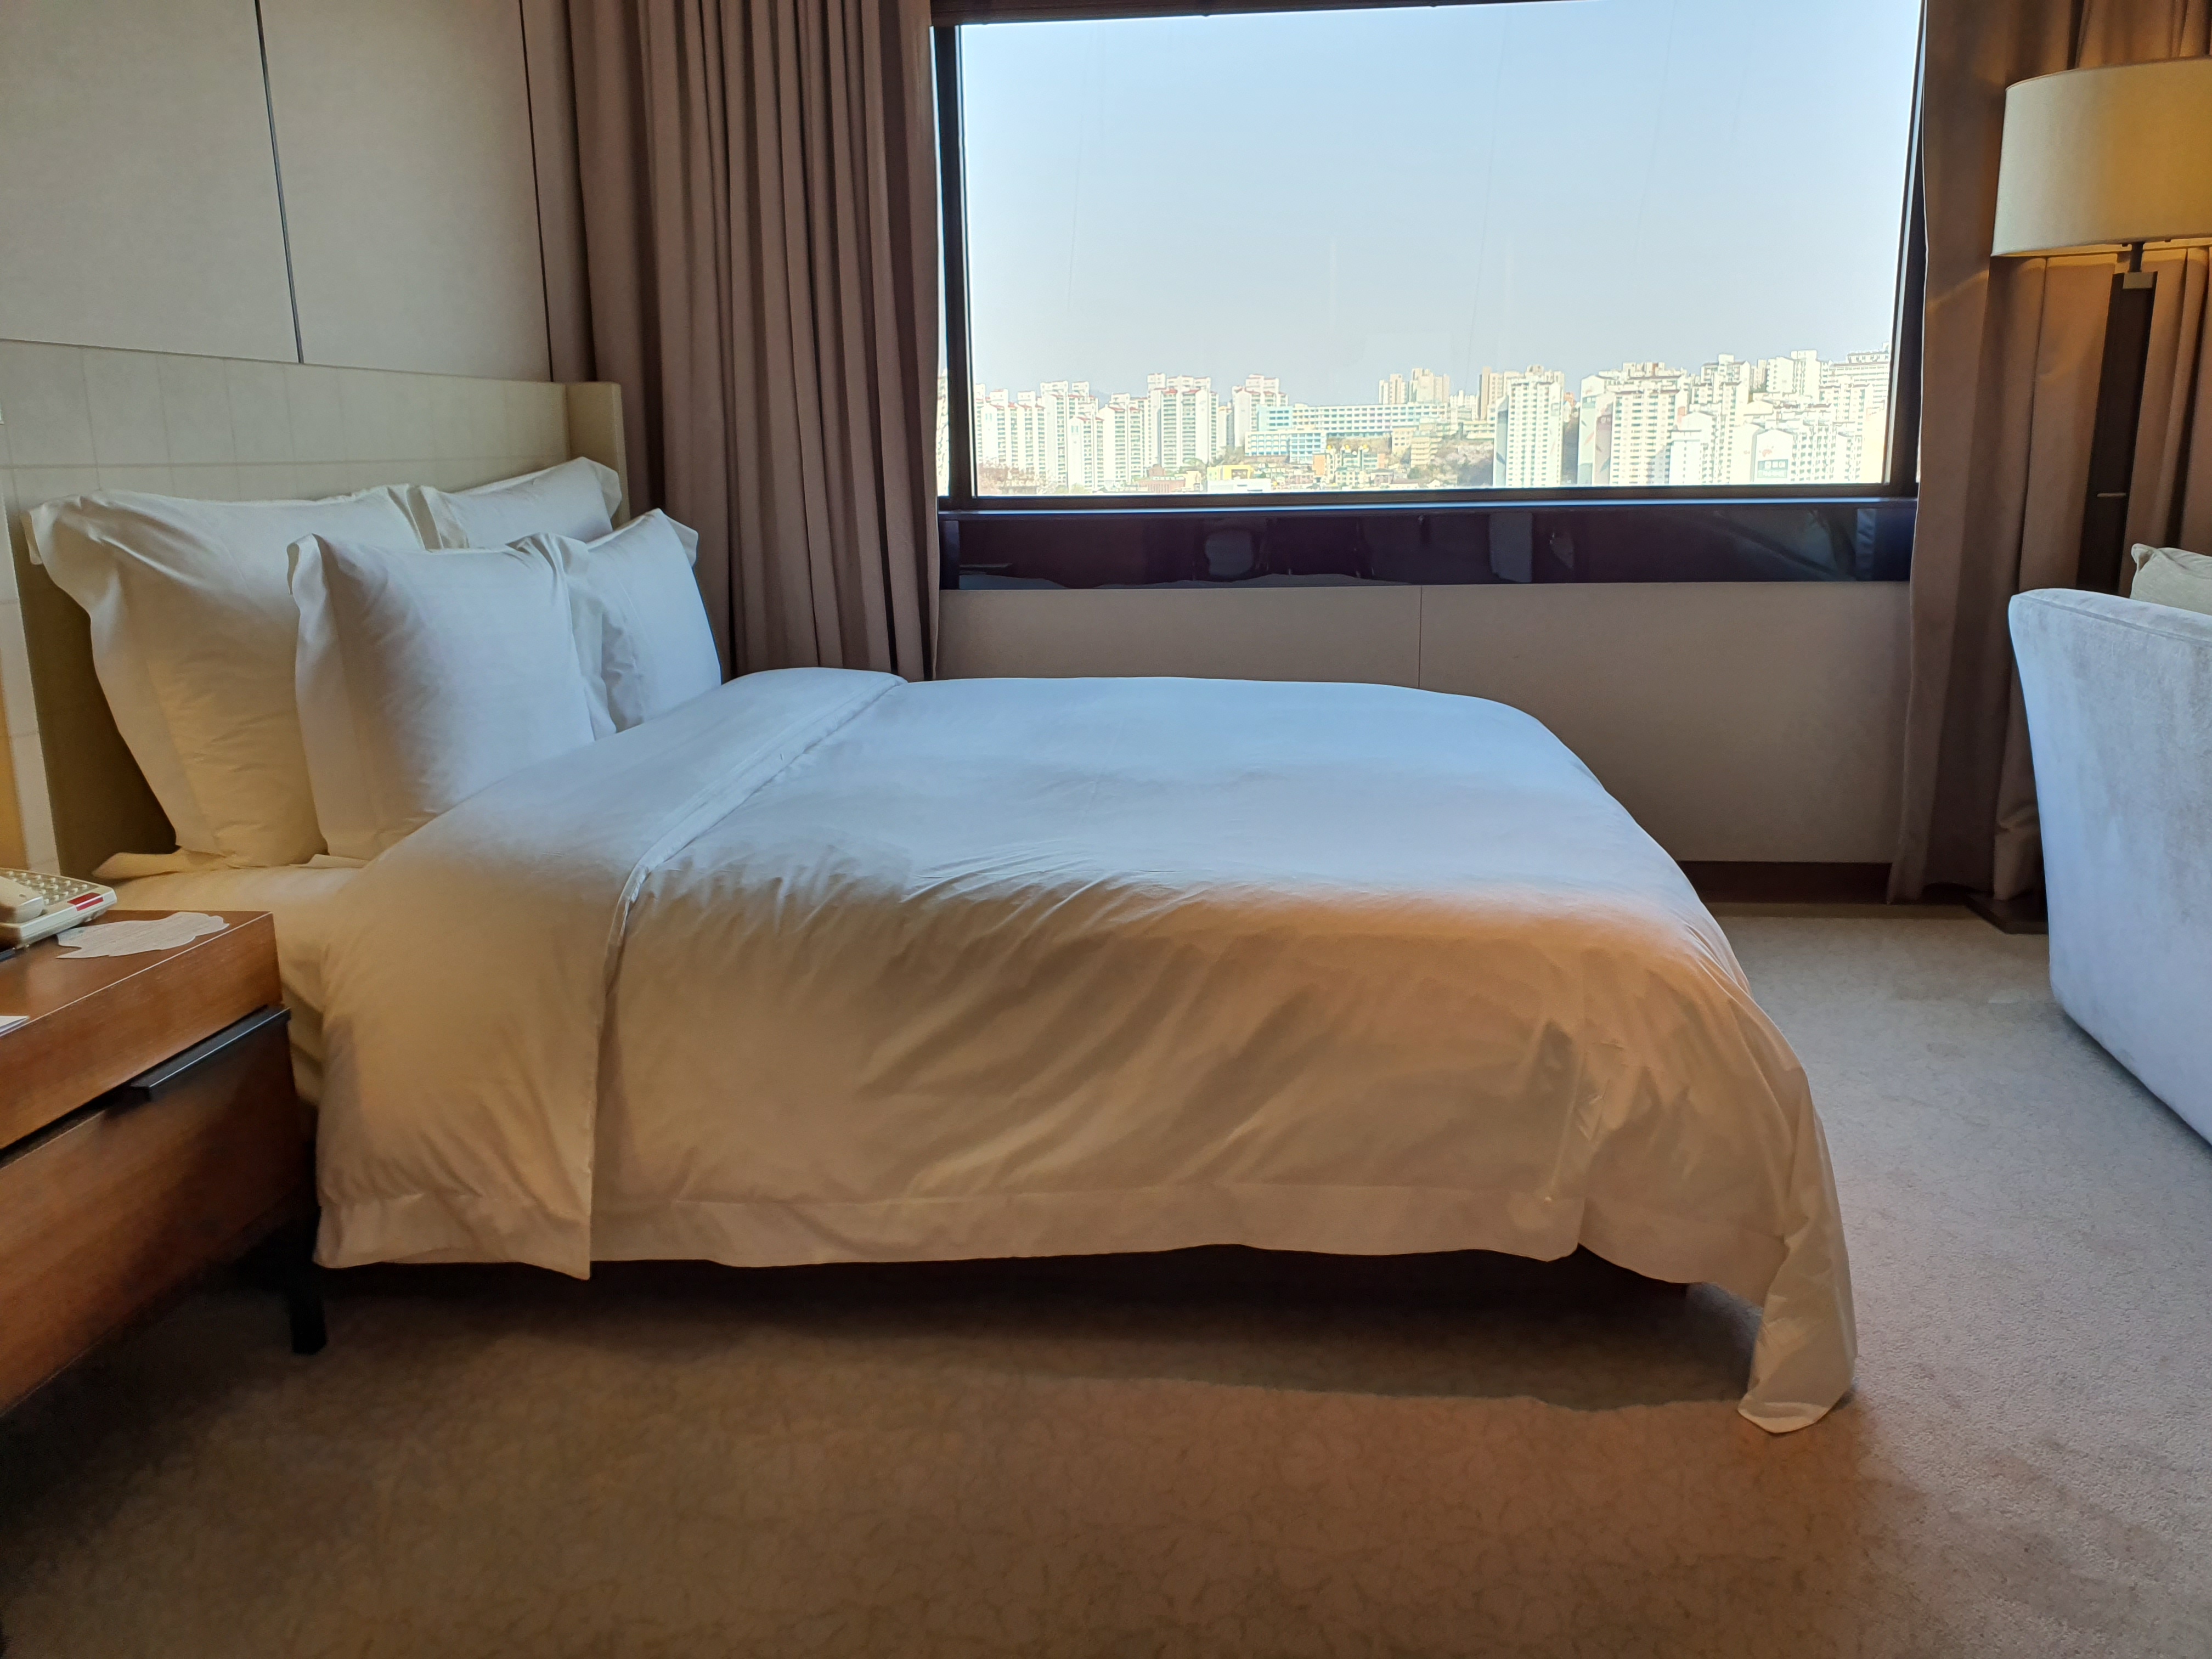 서울신라호텔1 : 깔끔하고 따뜻한 느낌의 신라호텔 객실 전경